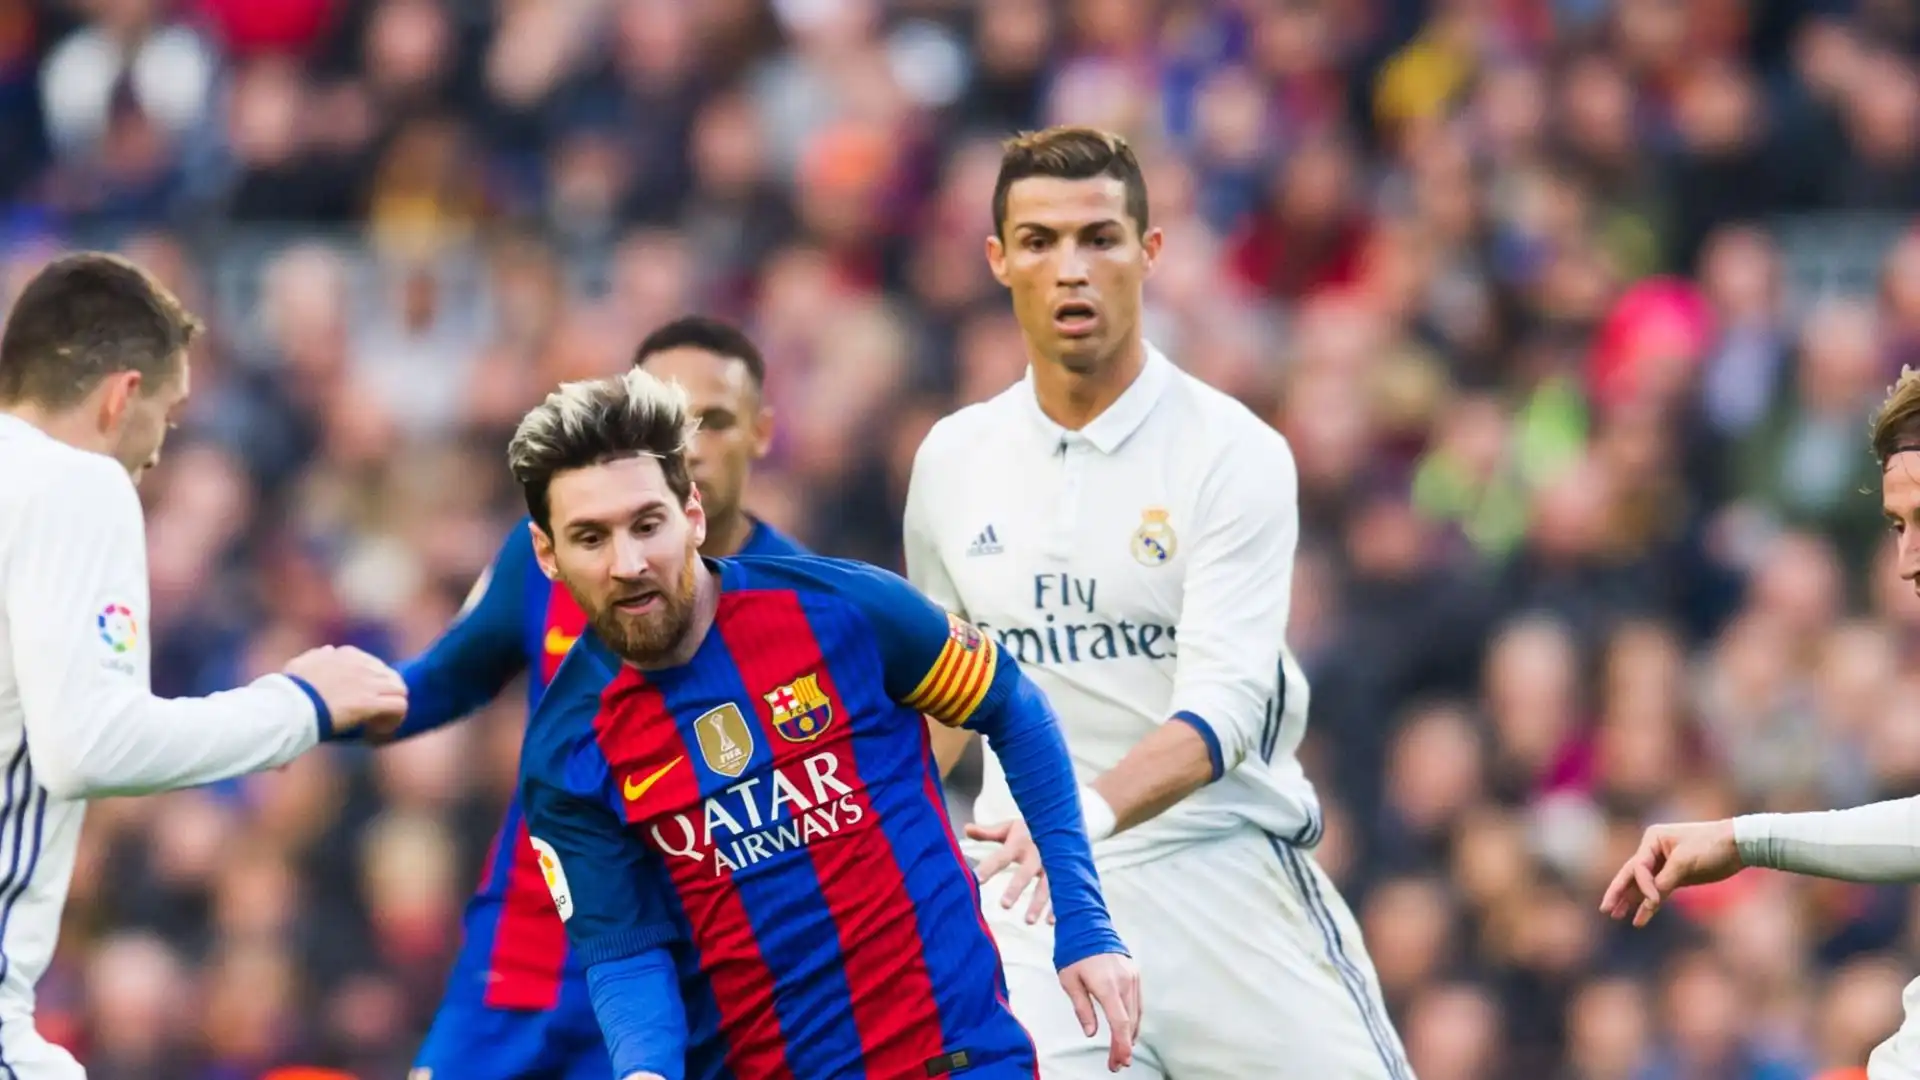 Ronaldo e Messi si sono affrontati recentemente in amichevole lo scorso gennaio: il PSG superò una selezione di giocatori del campionato saudita per 5-4, a segno entrambi i campioni